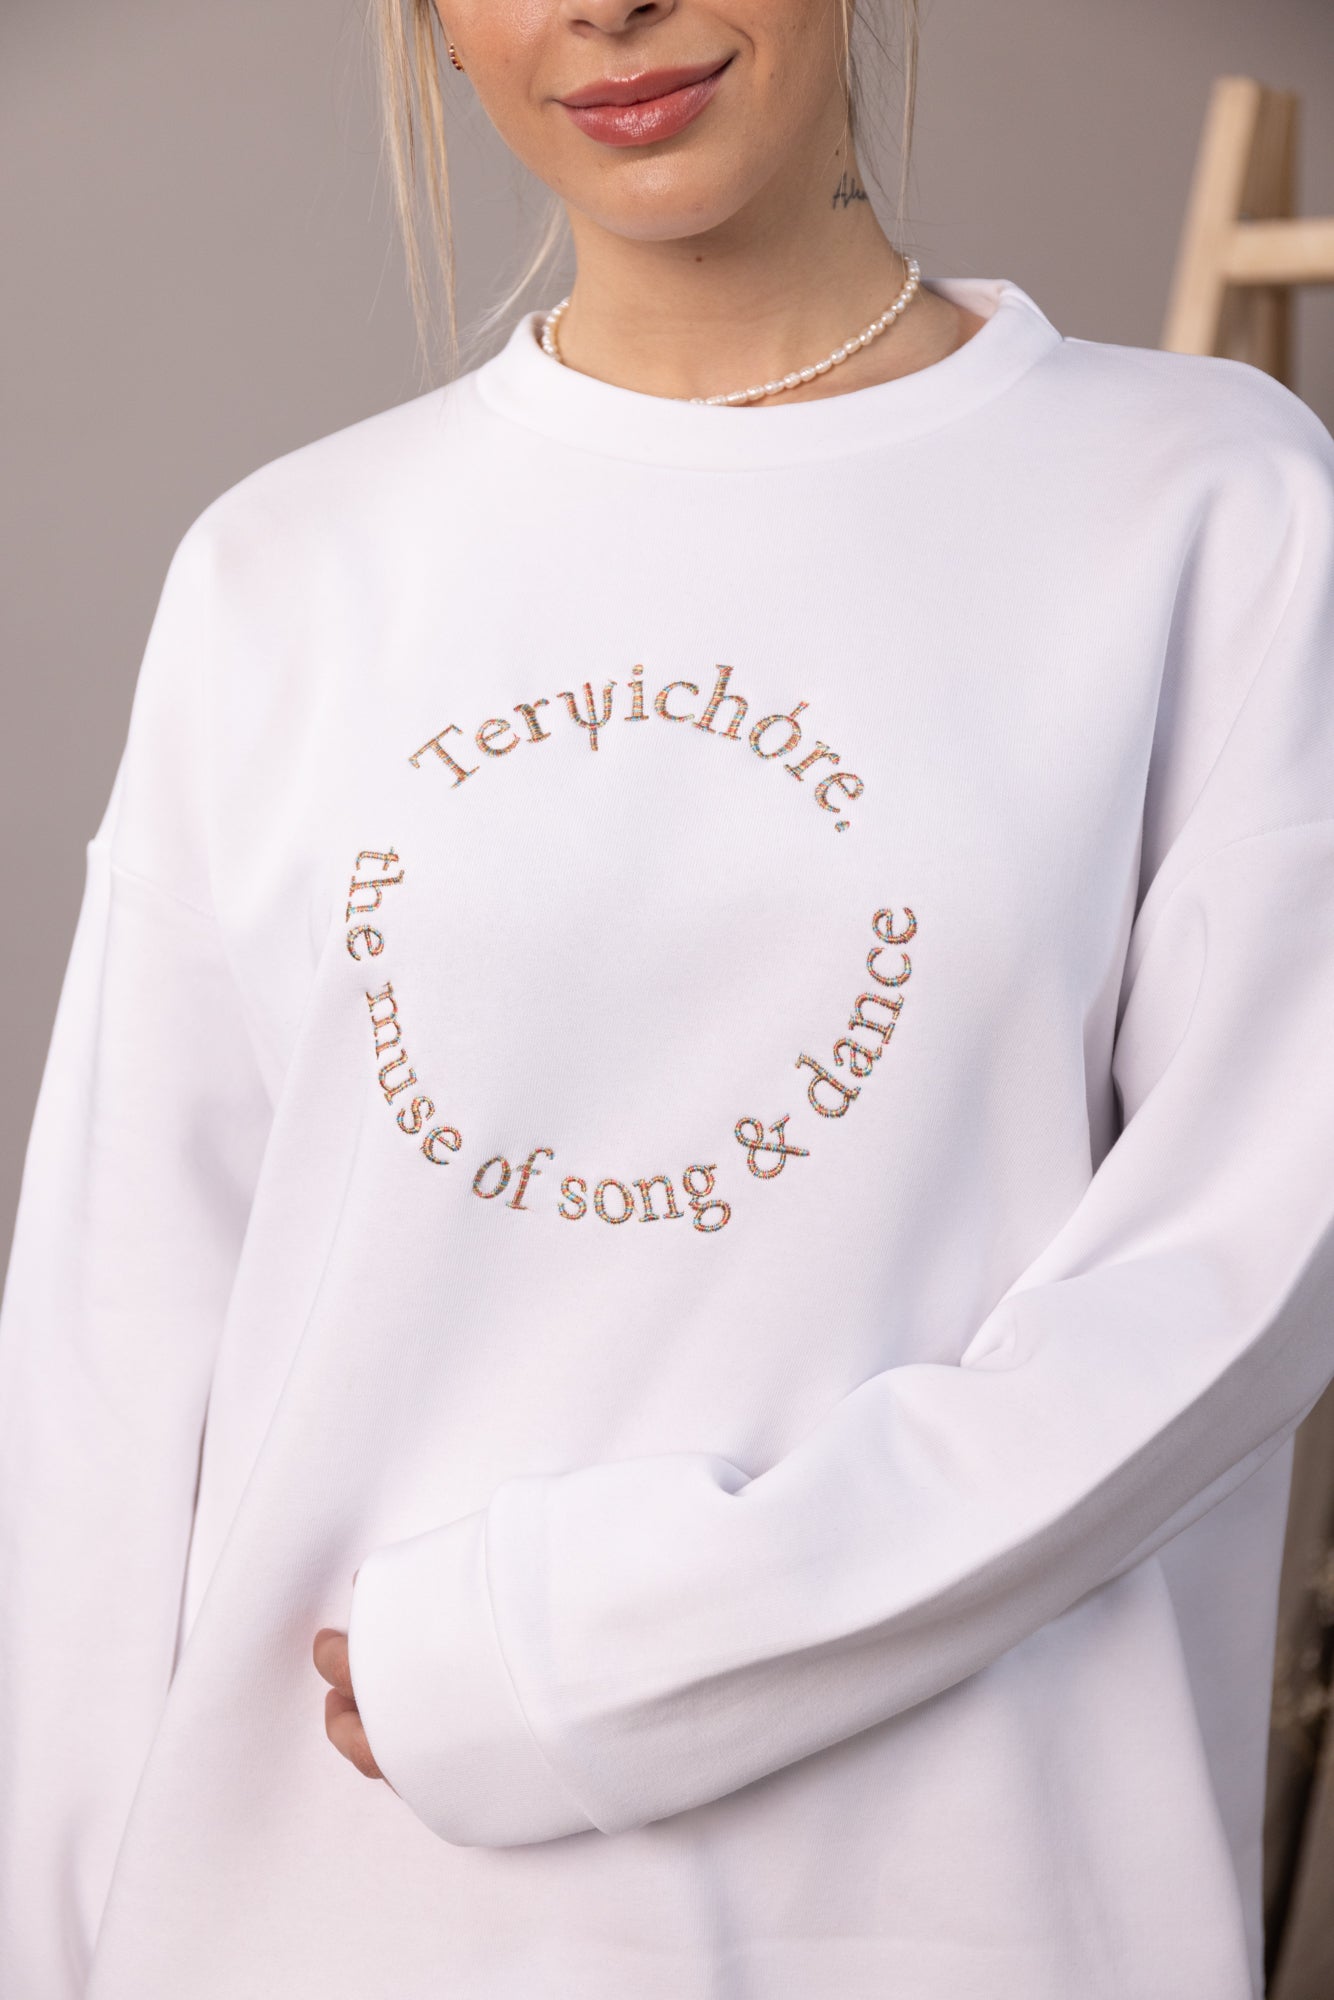 Terpsichore- Dance Sweatshirt